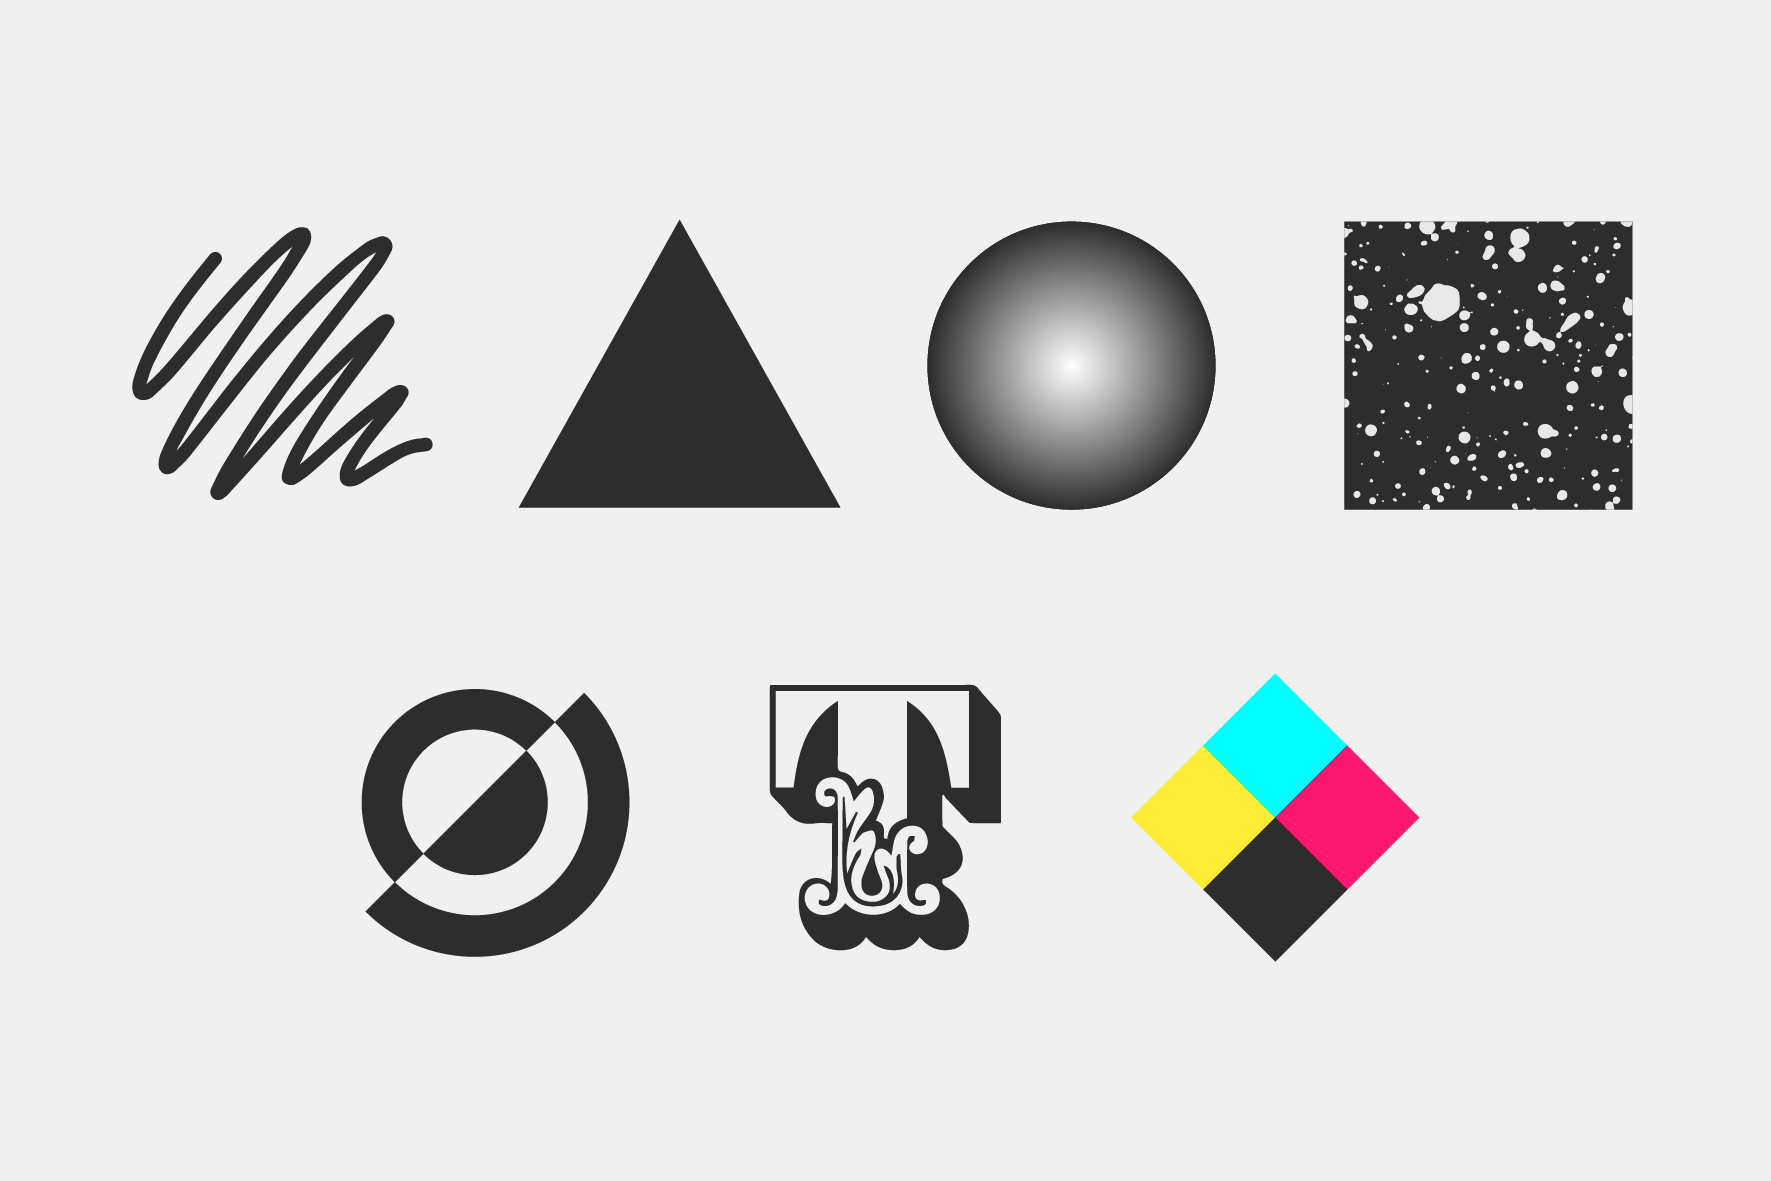 elementos visuales del diseño gráfico línea forma objeto espacio textura tipografía color